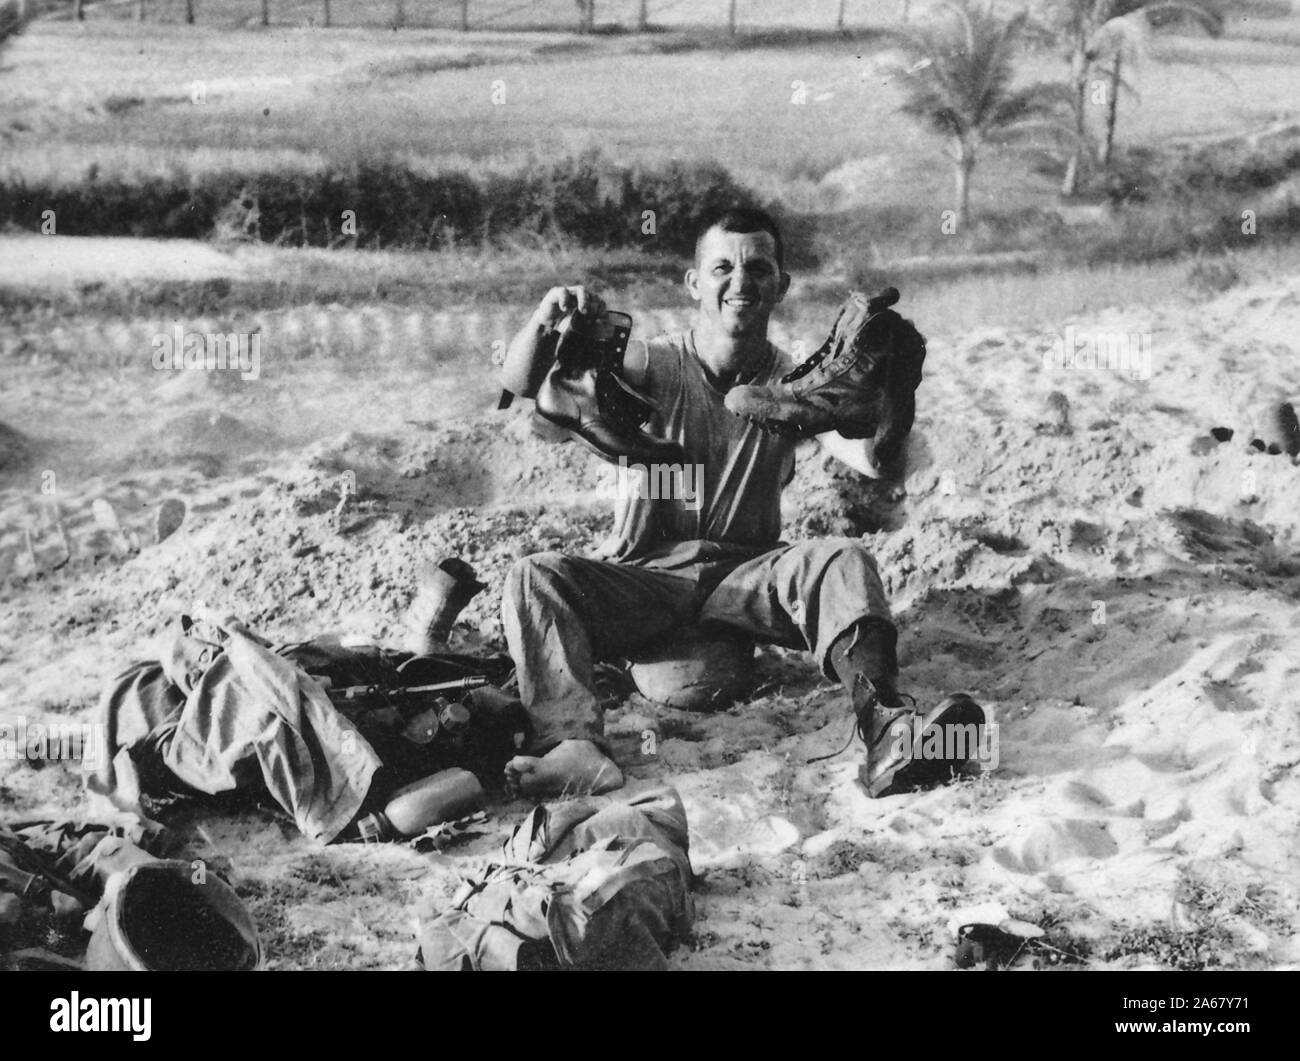 Un militaire américain est assis à l'extérieur sur une colline sablonneuse une journée ensoleillée, faisant face à la caméra, tout en tenant une nouvelle chaussure d'une part et une vieille chaussure de l'autre, le Vietnam, 1965. () Banque D'Images